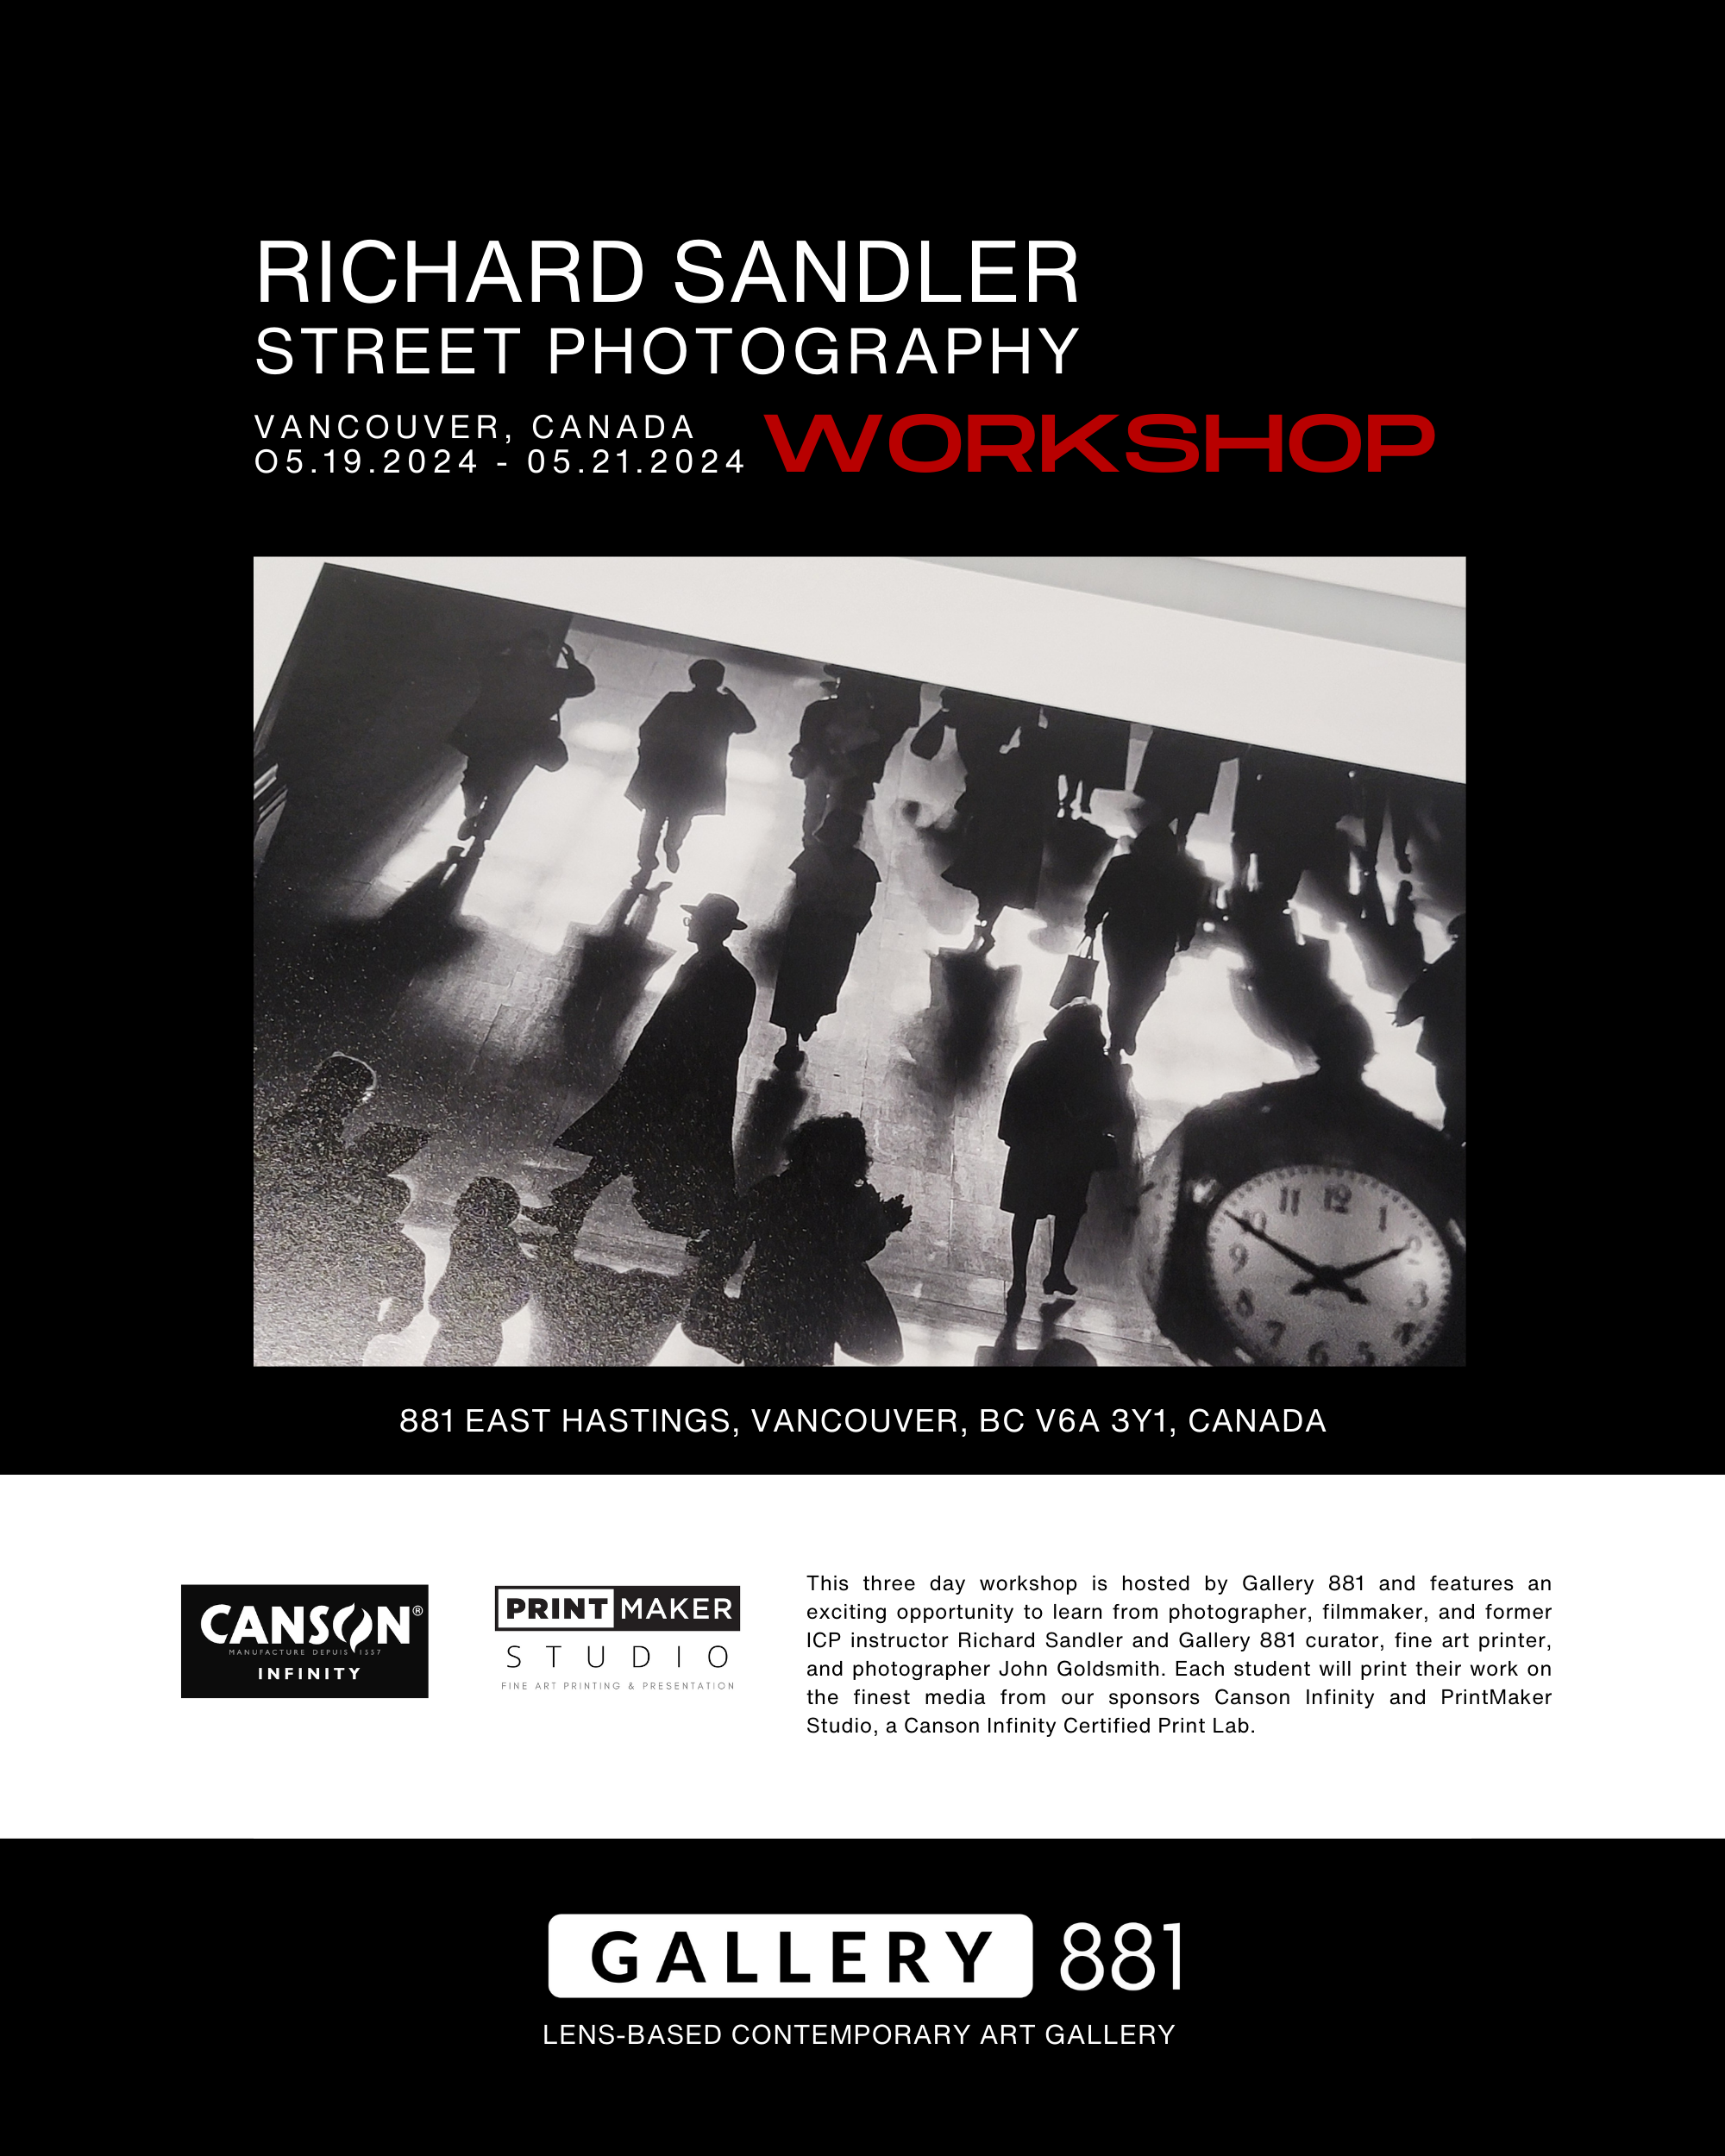 Gallery-881-Richard-Sandler-Workshop-4.png